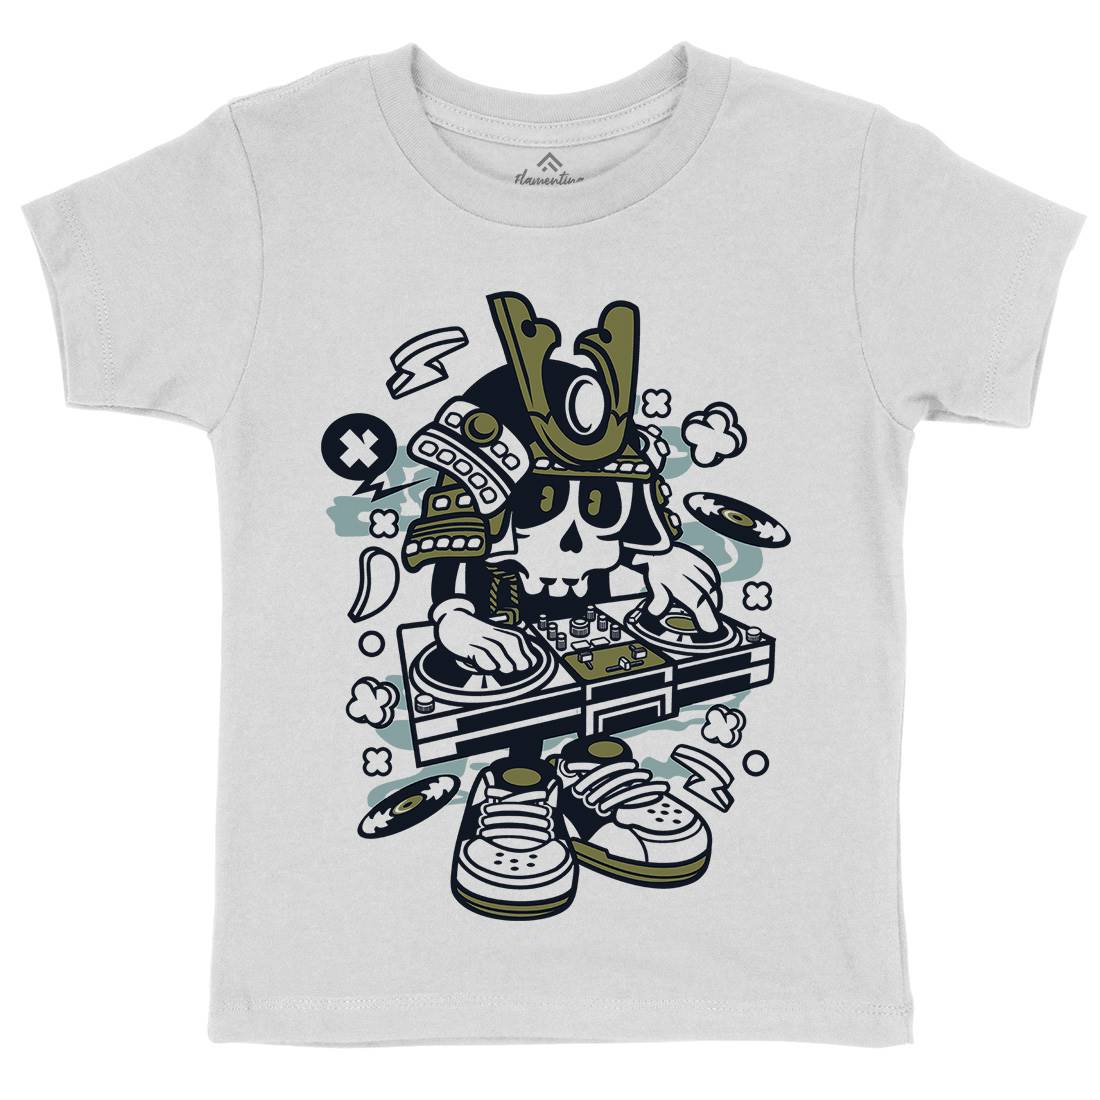 Samurai Dj Kids Organic Crew Neck T-Shirt Music C216